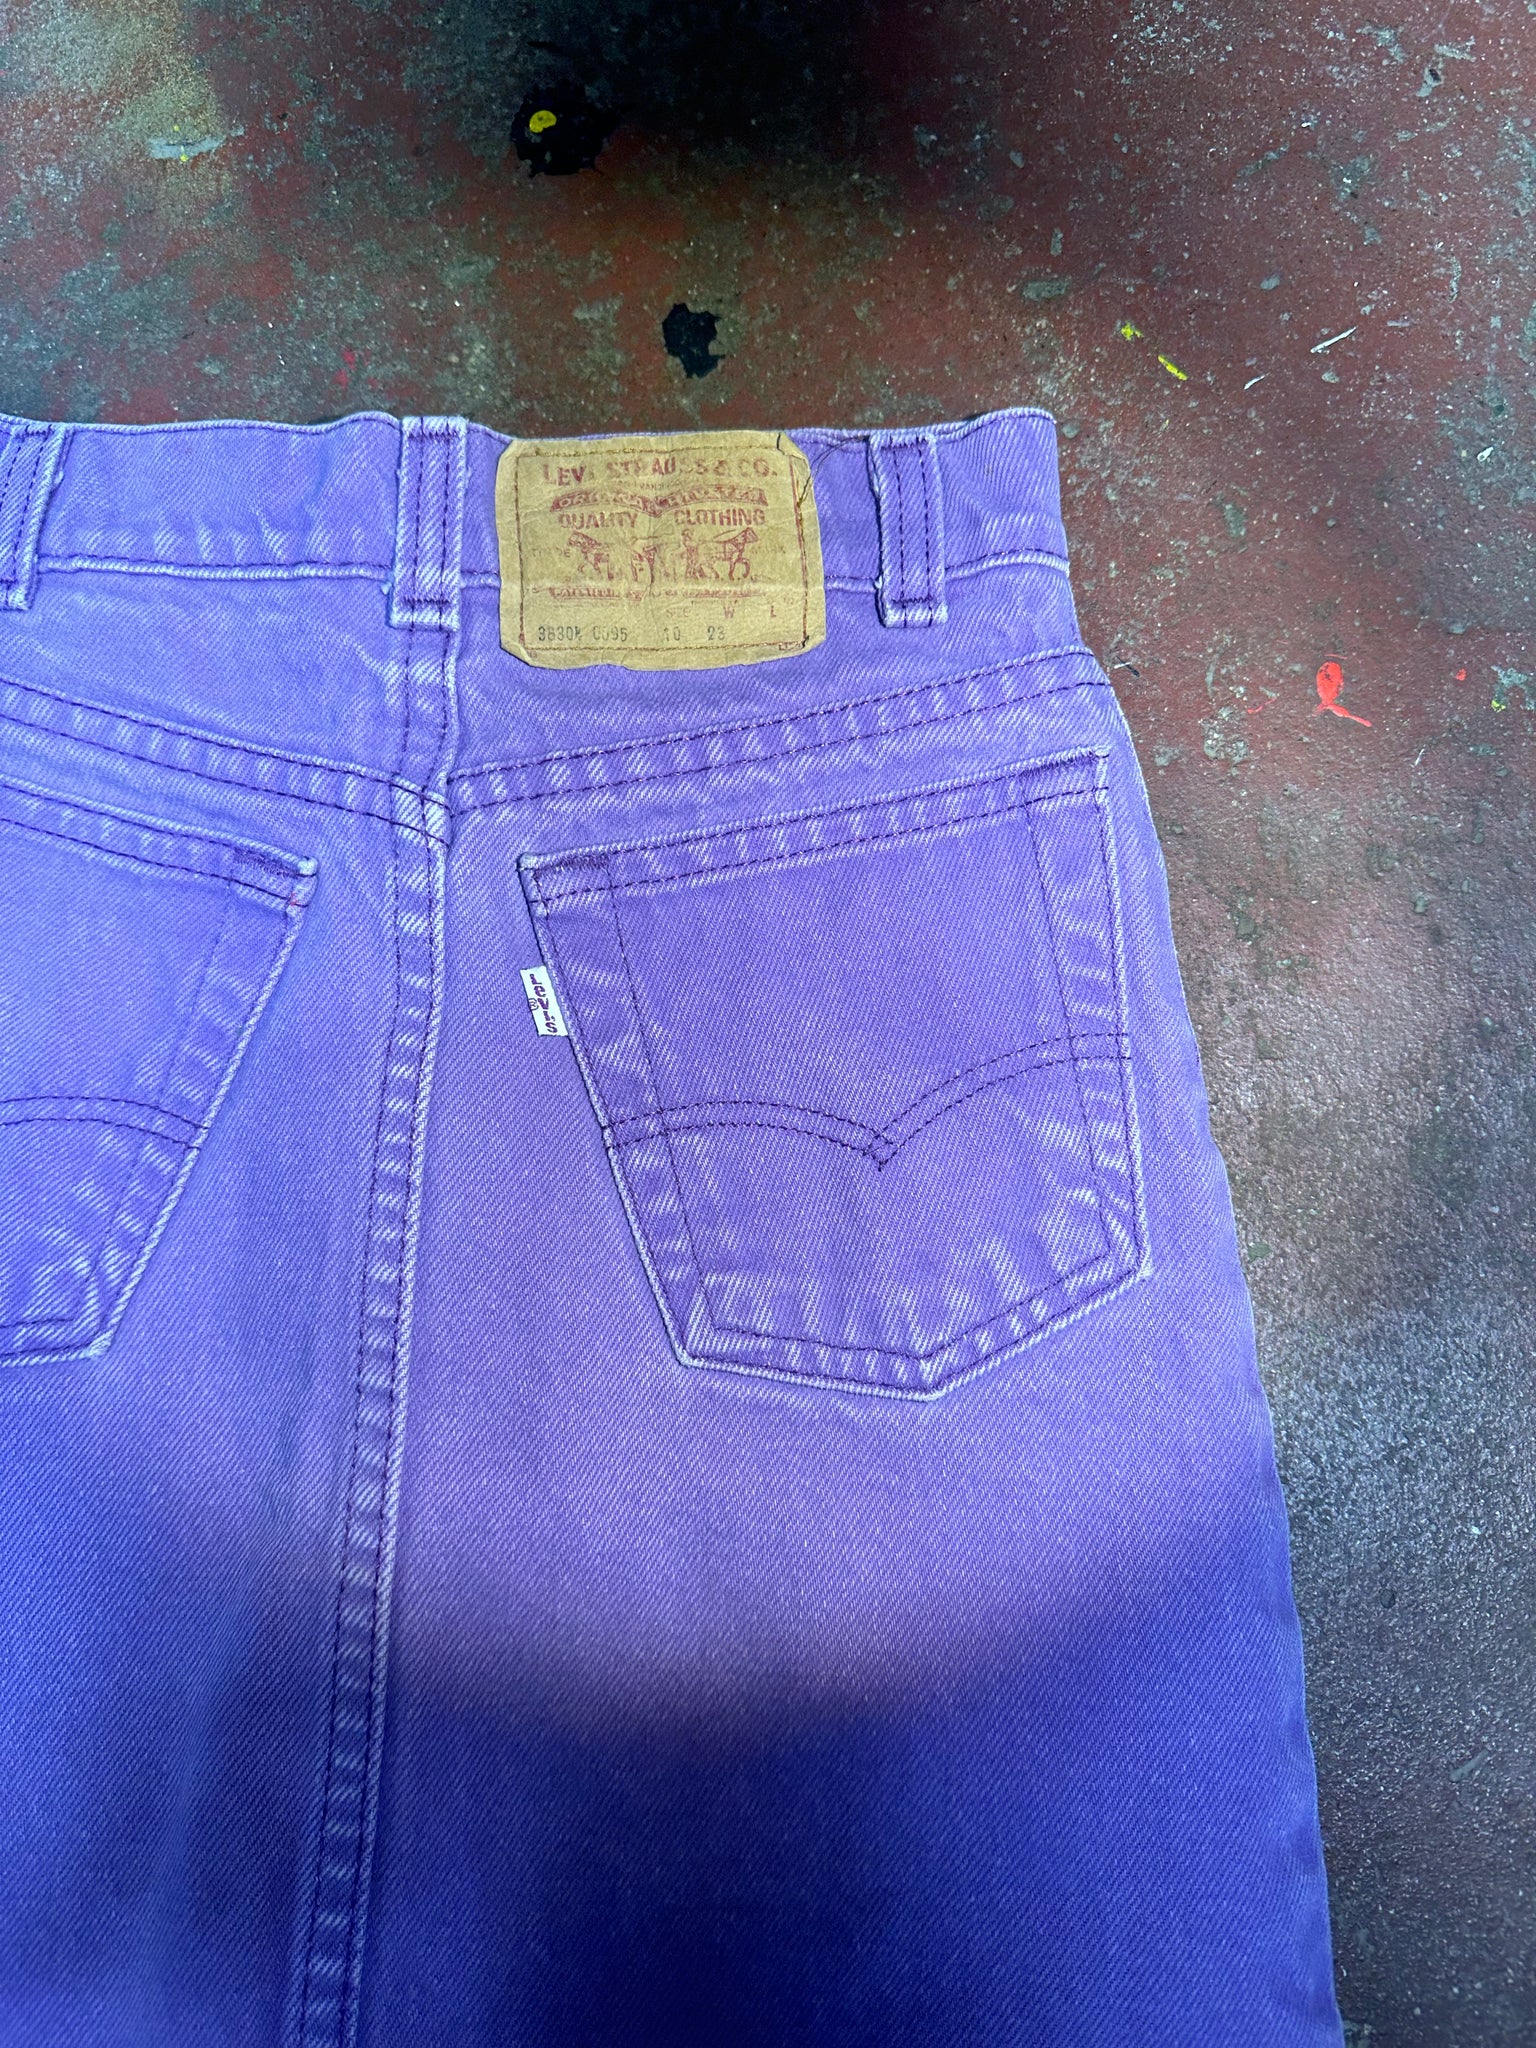 Vintage 1980's Levi Purple Denim Skirt (JYJ-193)